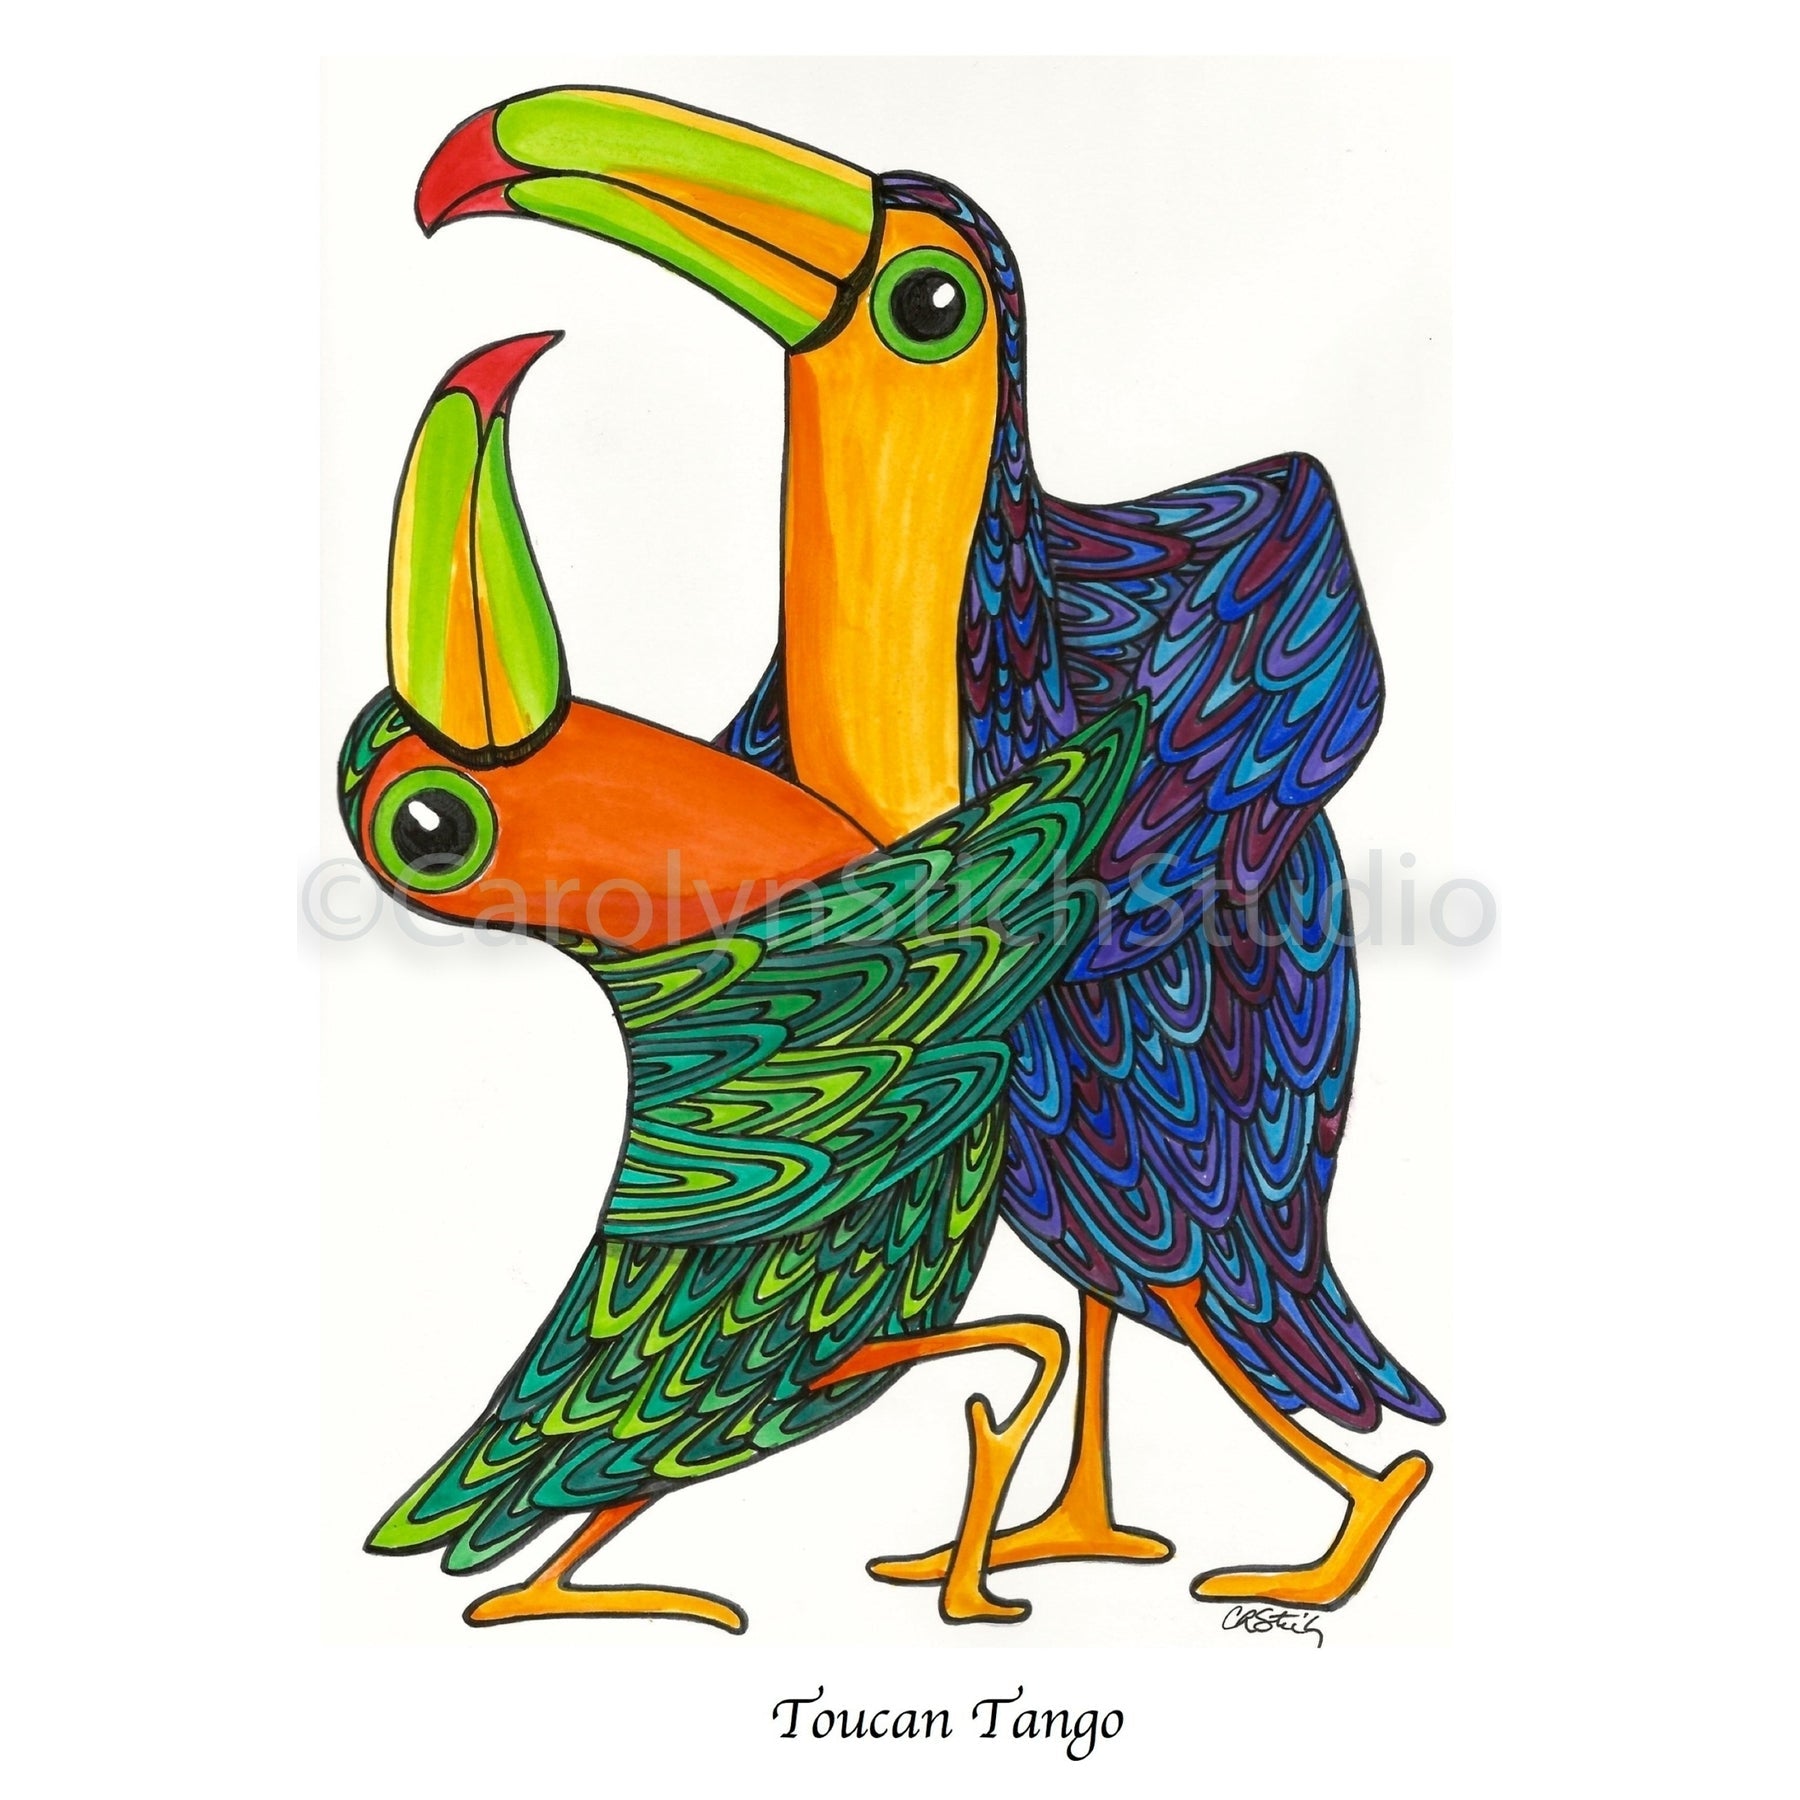 Toucan Tango, rug hooking pattern